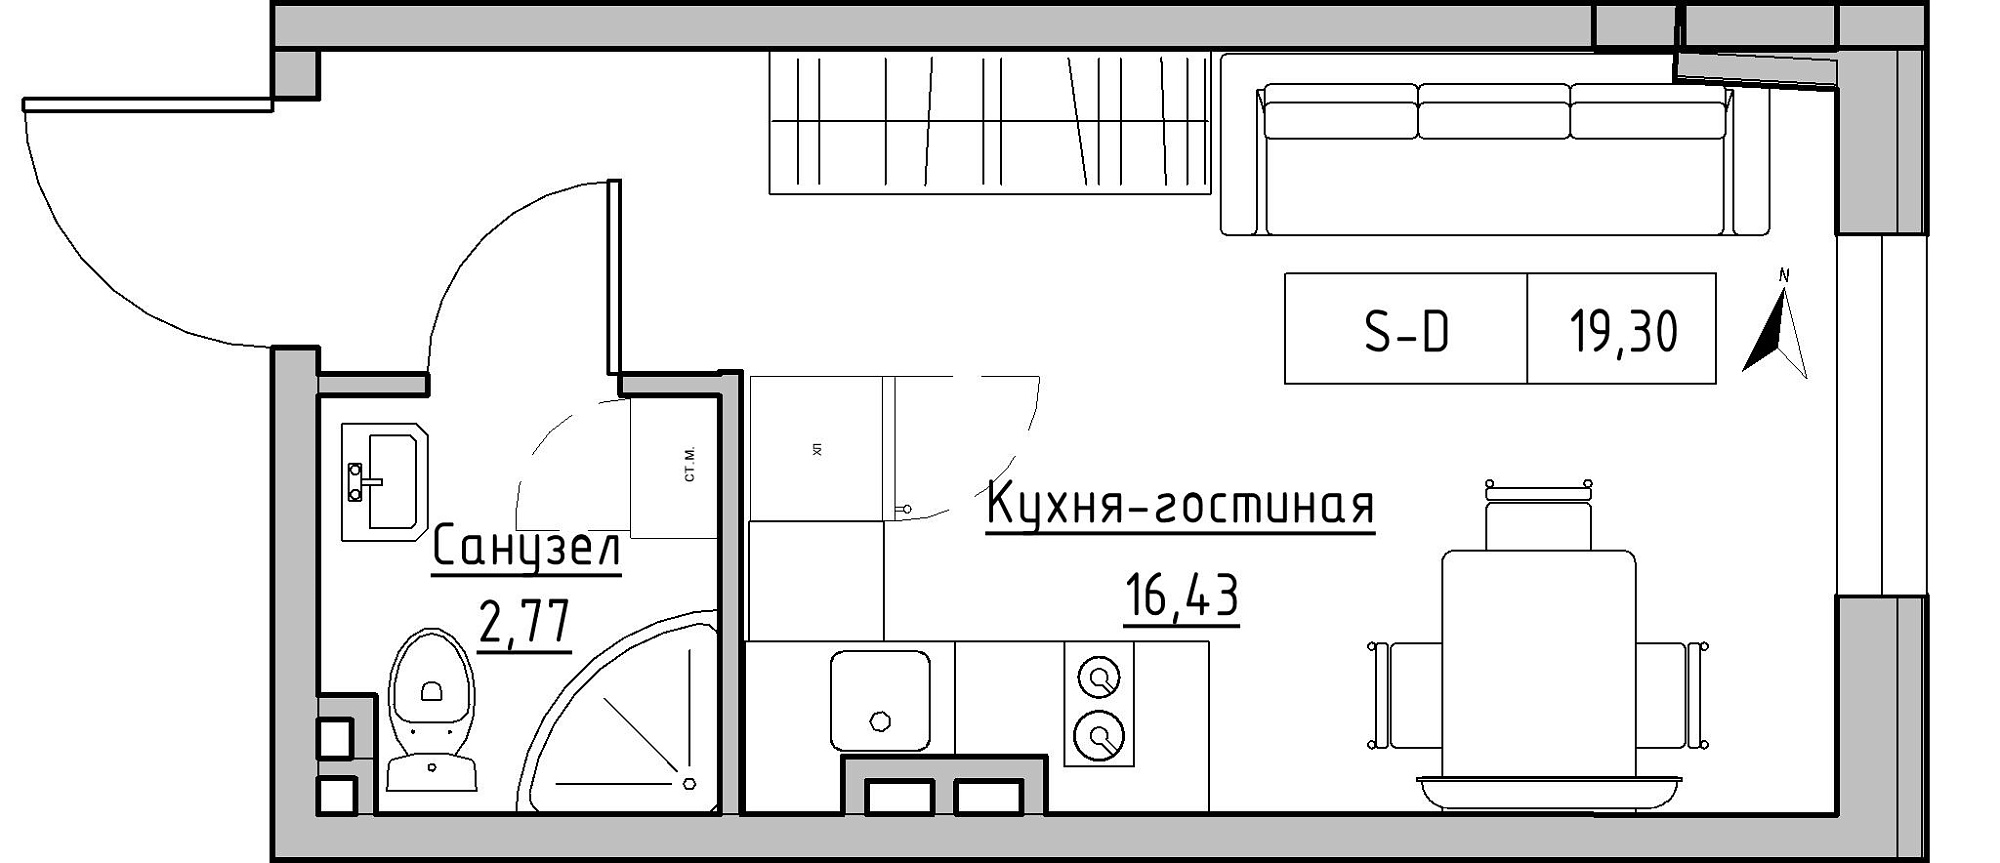 Планування Smart-квартира площею 19.3м2, KS-024-02/0014.